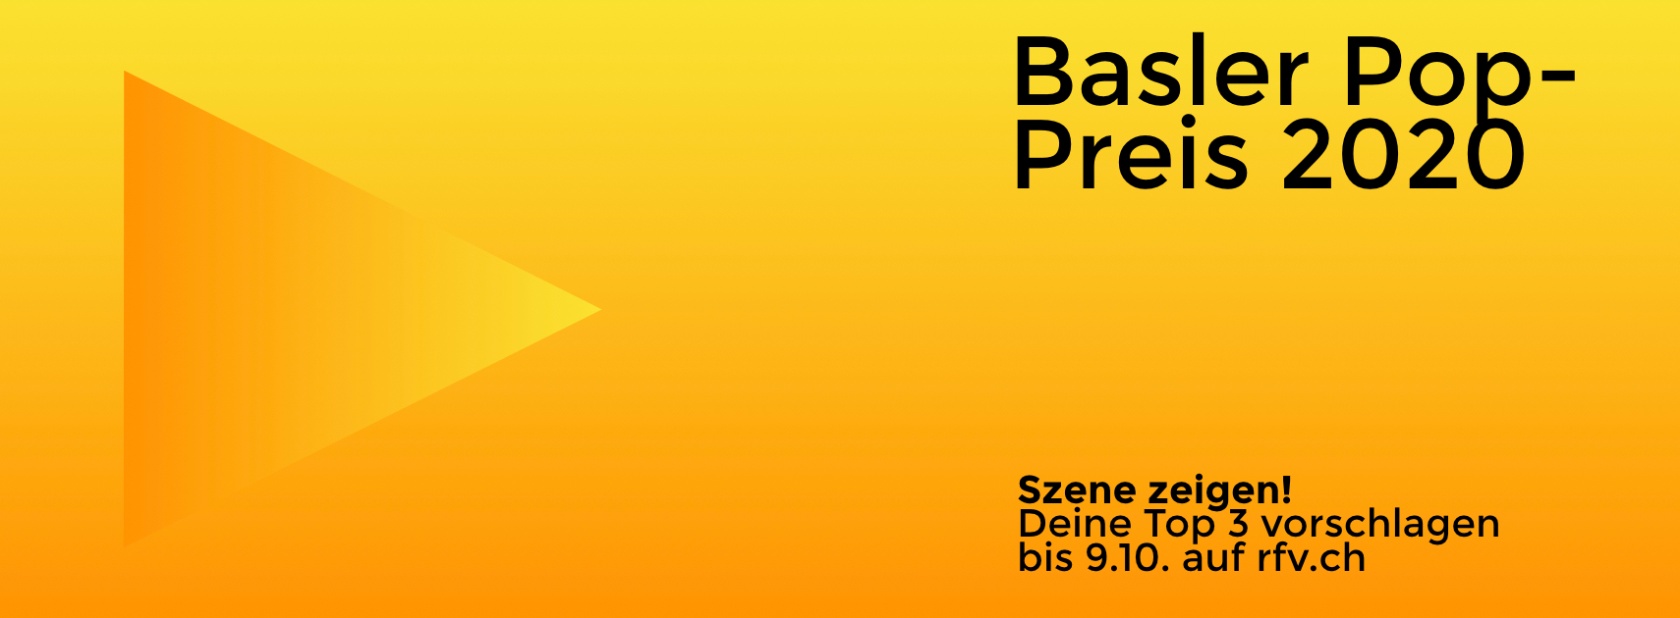 Basler Pop-Preis 2020 Banner